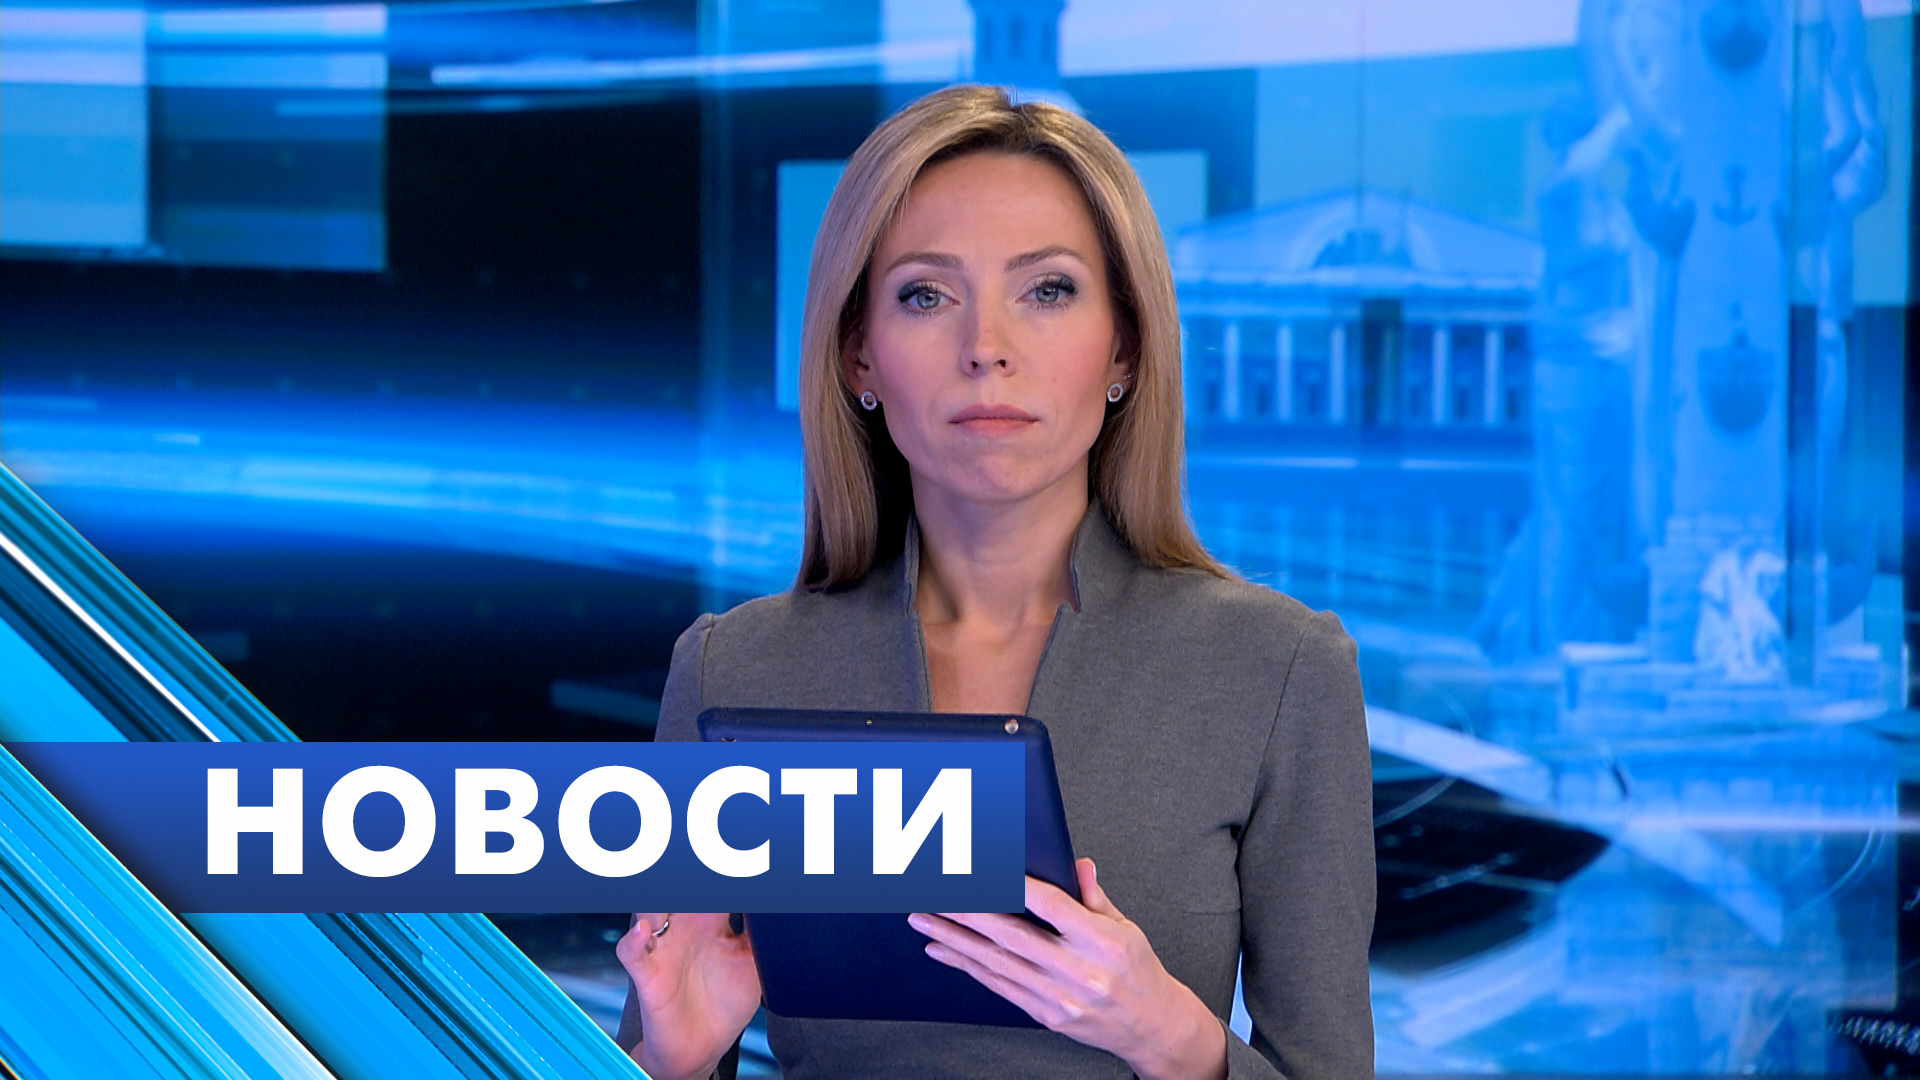 Главные новости Петербурга / 22 января